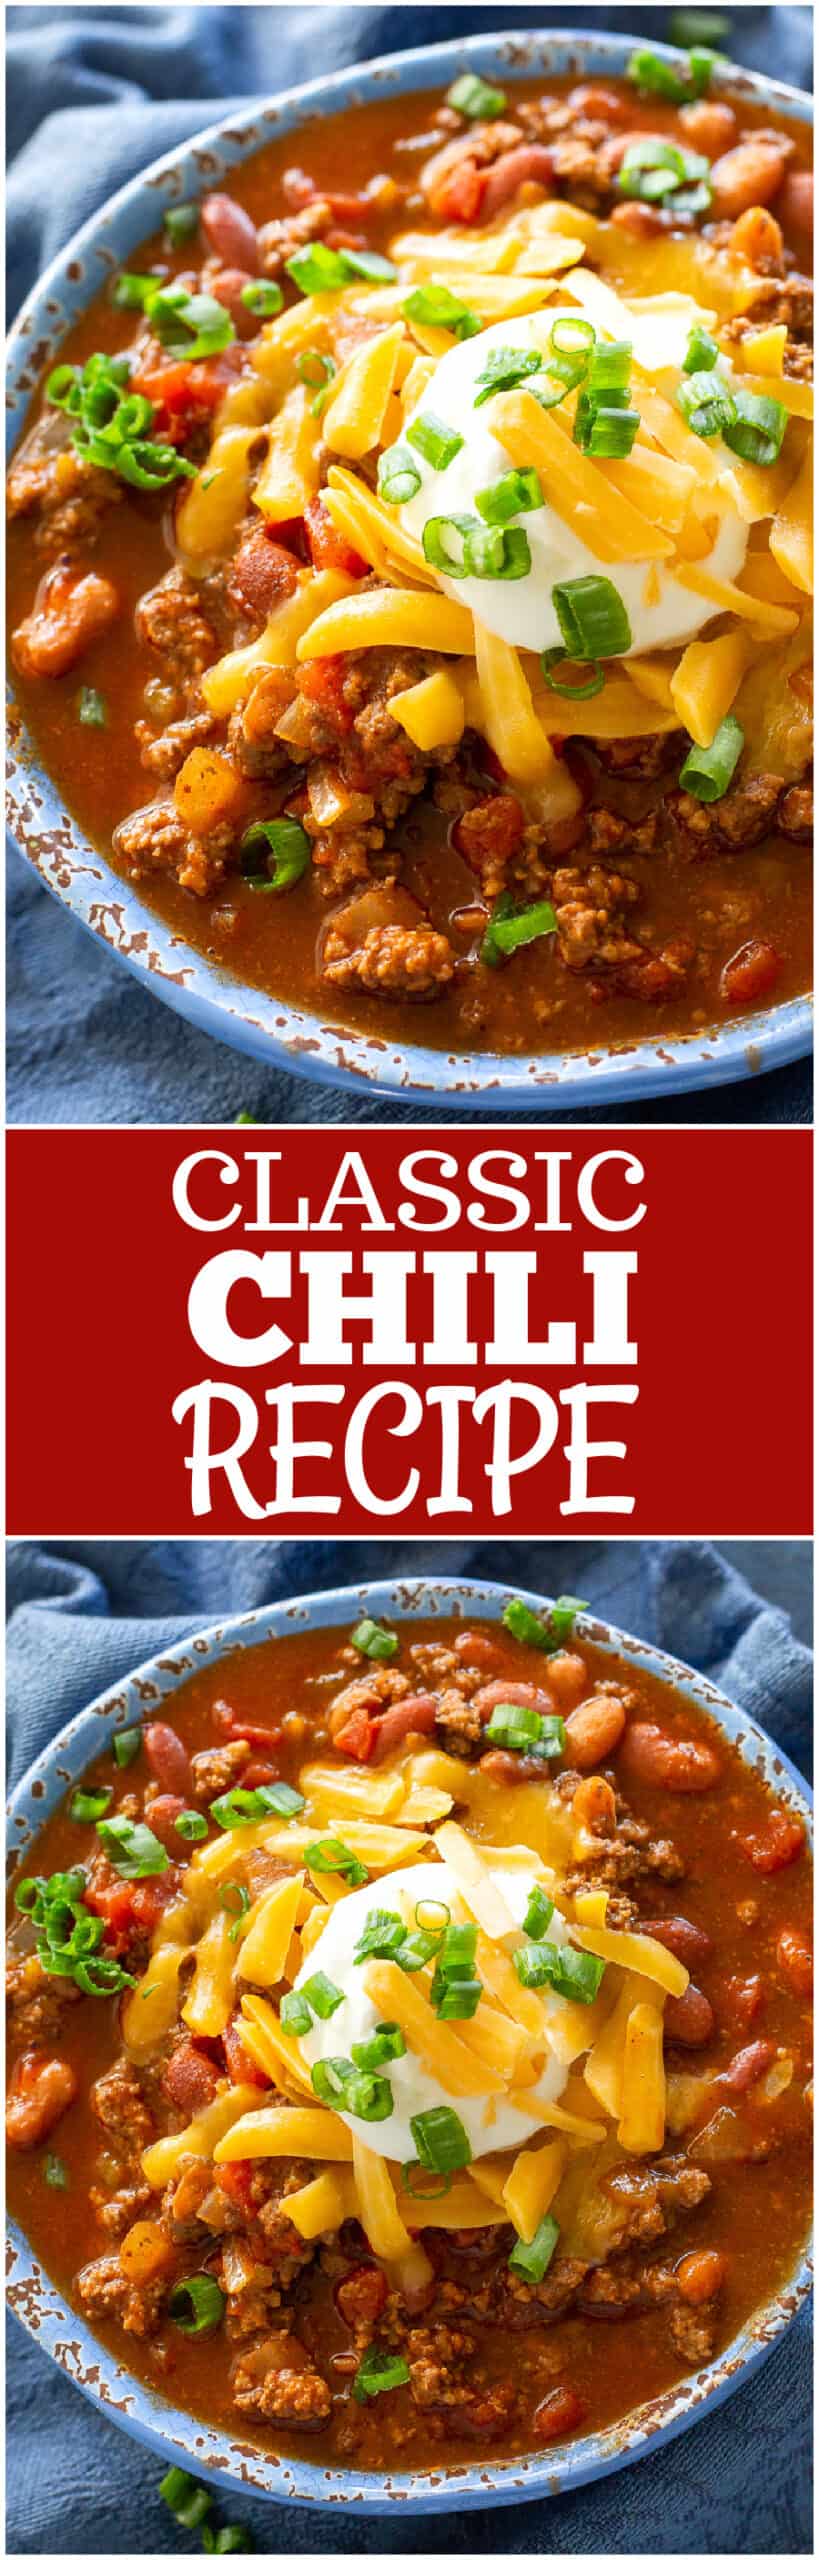 classic chili recipe